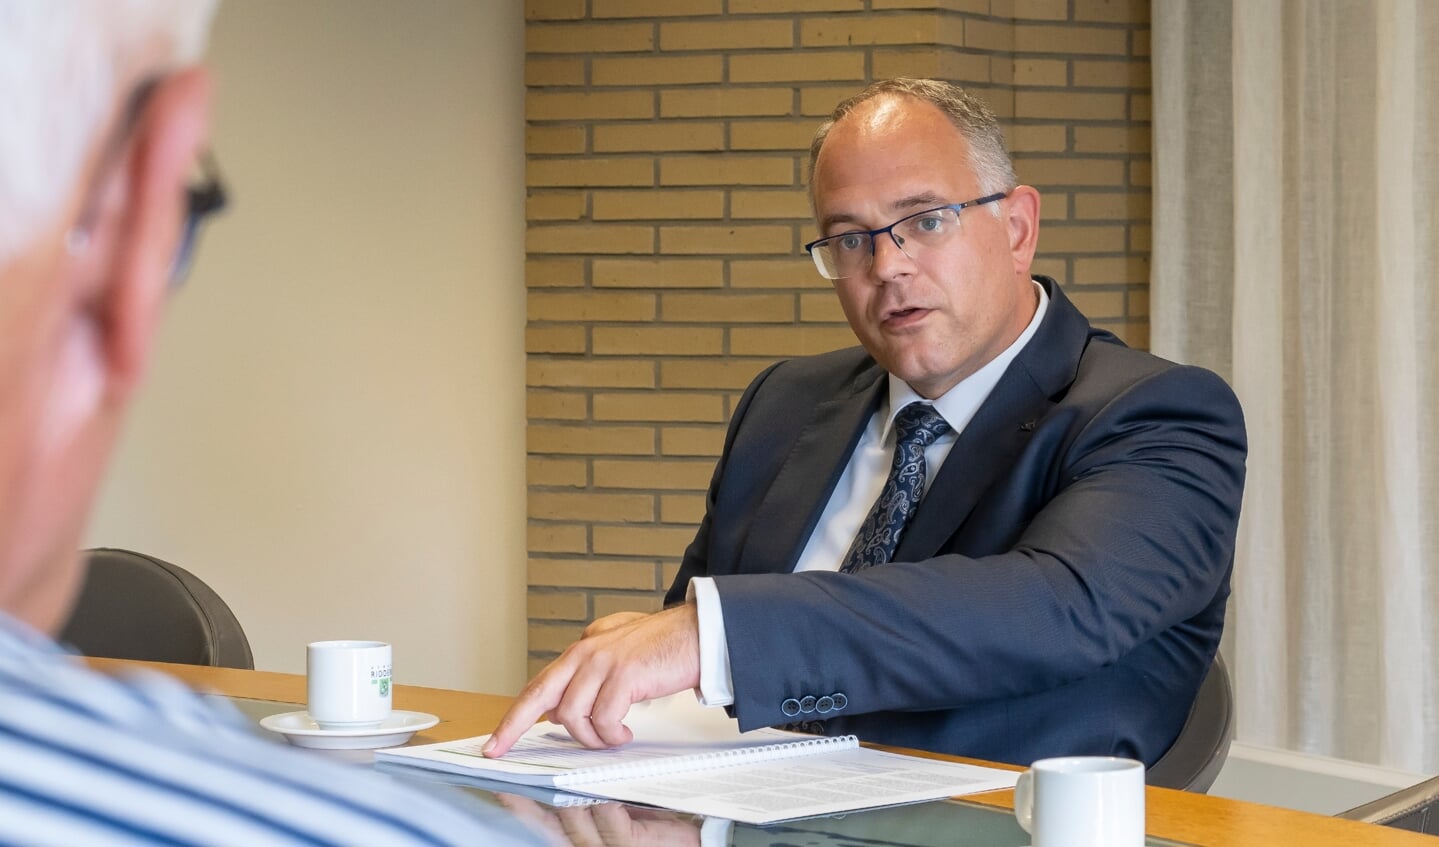 Wethouder Van der Duijn Schouten: "We berekenen de inflatie niet volledig door"